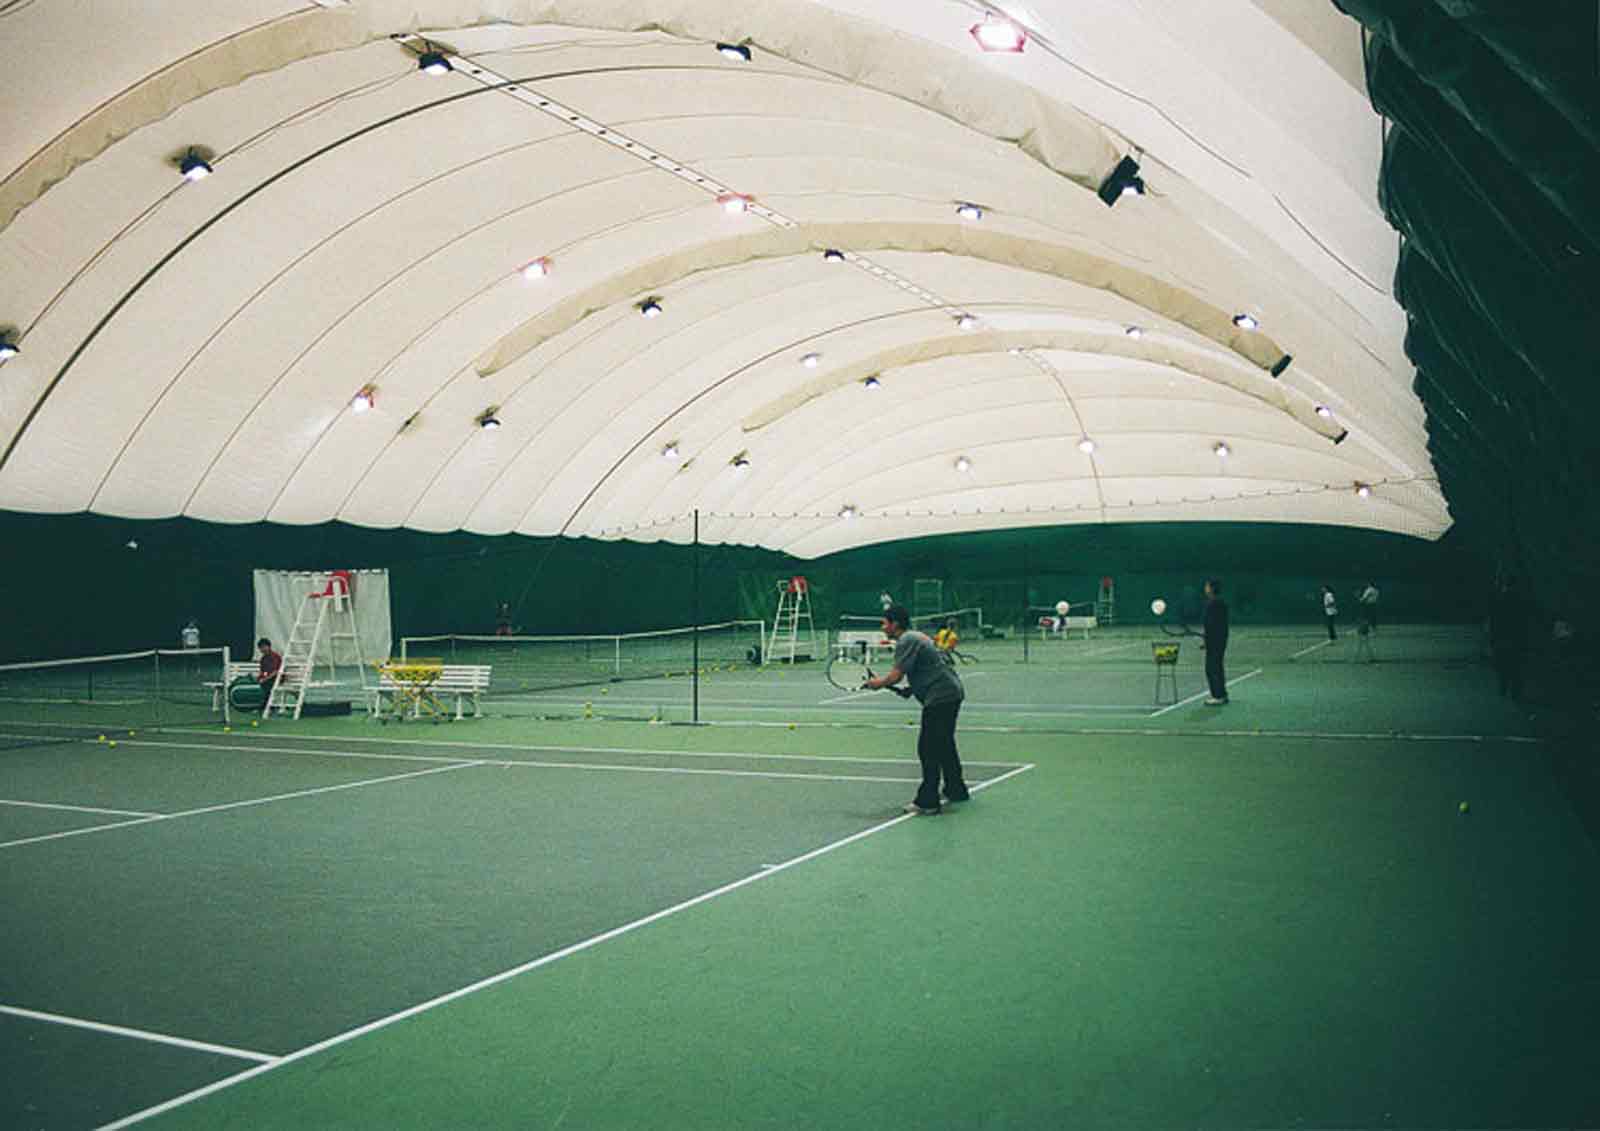 https://www.klimagiel.it/wp-content/uploads/2022/01/tennis2.jpg